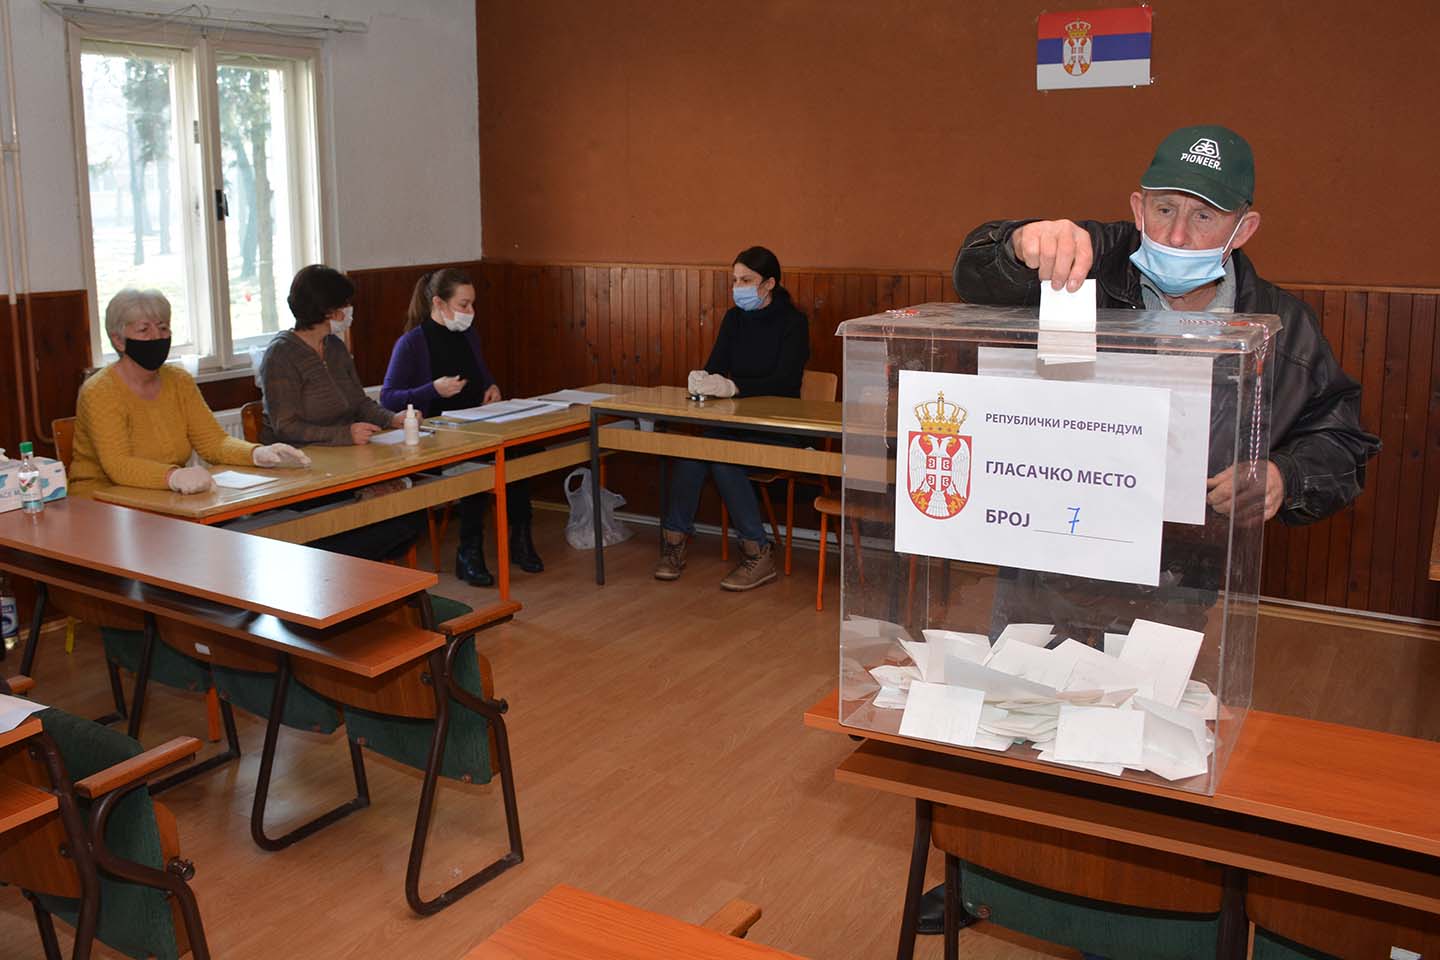 Referendum u Opovu: Izlaznost 45%, za ustavne promene 70% izašlih građana